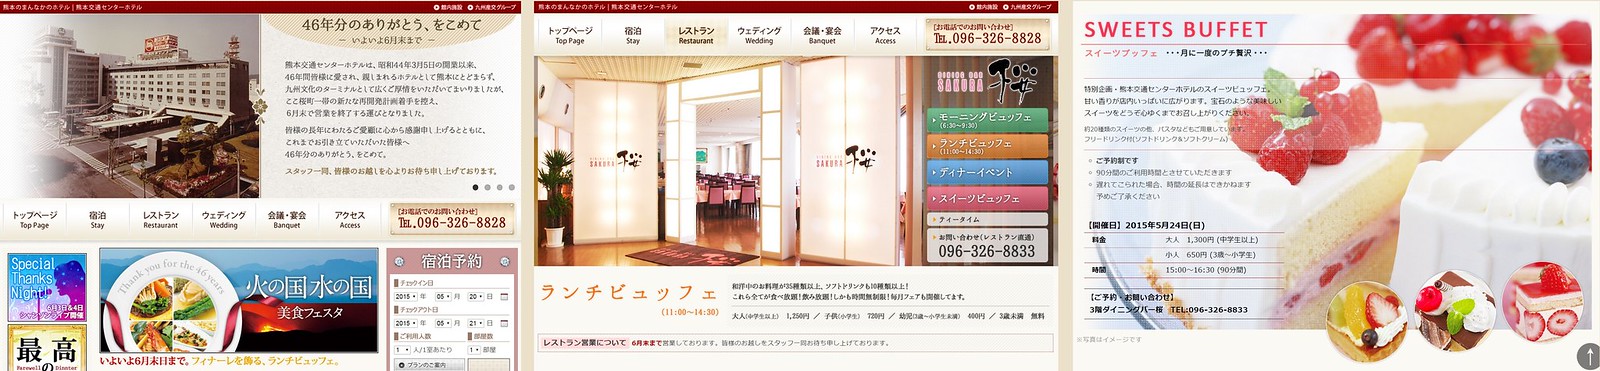 熊本交通センターホテル ダイニングバー桜 公式サイト ウェブサイト ホームページ